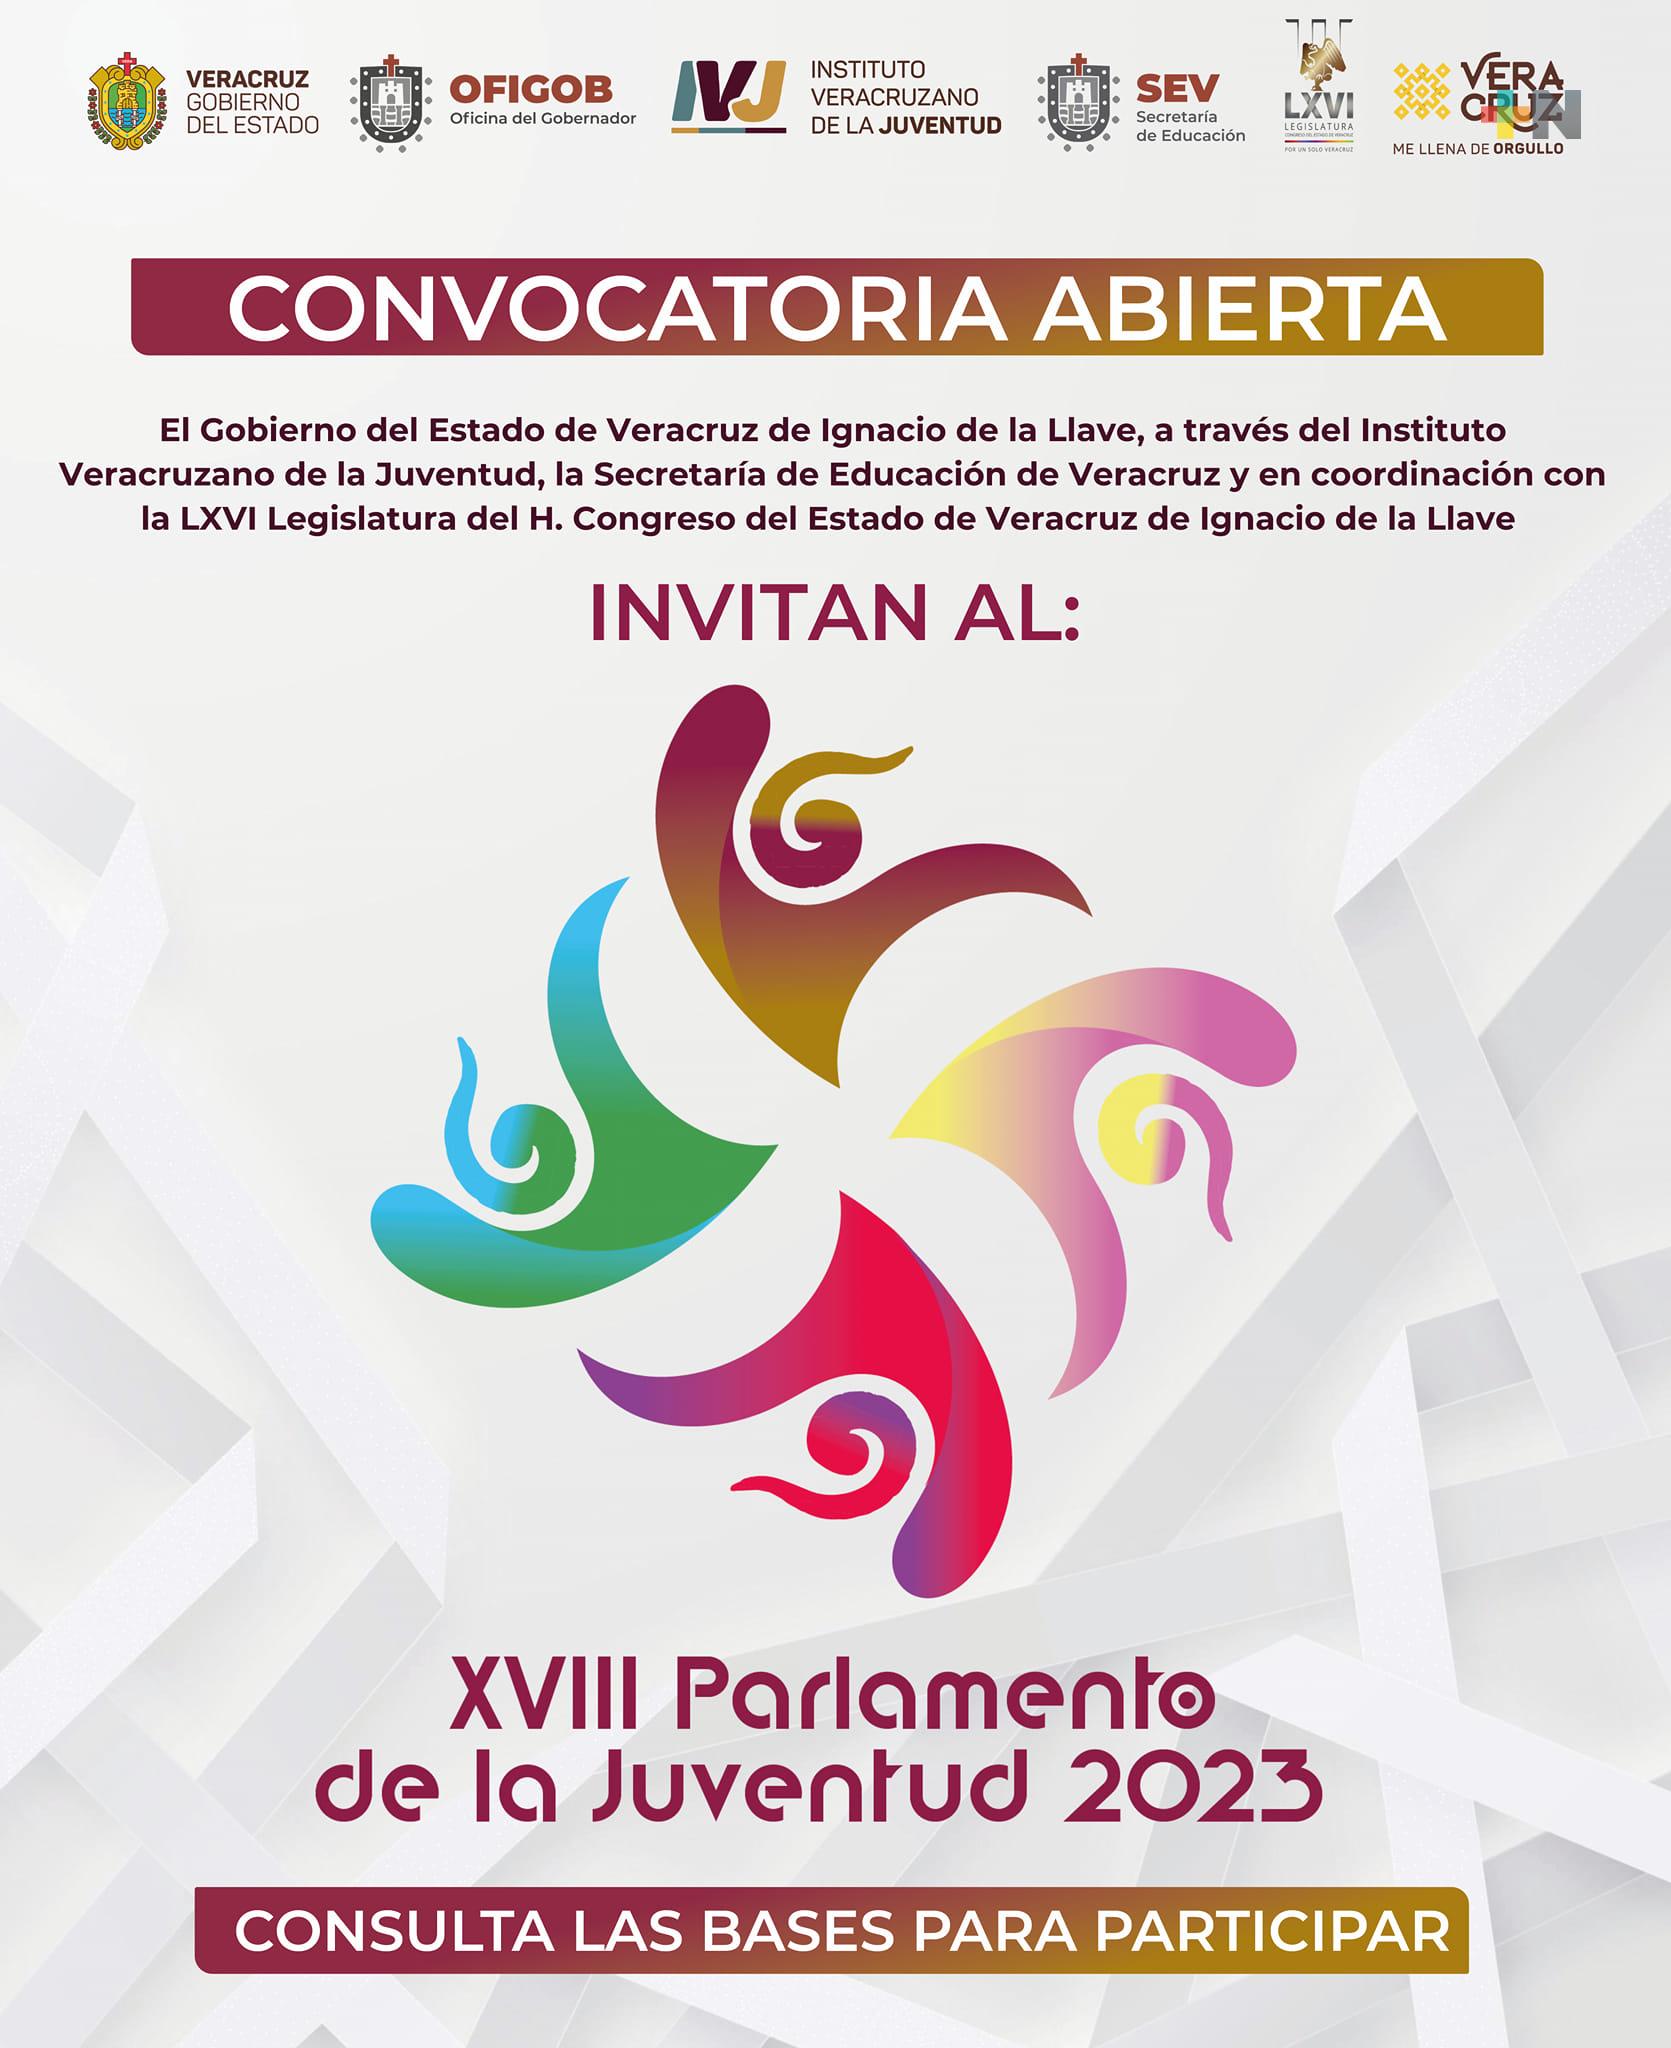 Abierta convocatoria para participar en Parlamento de la Juventud 2023